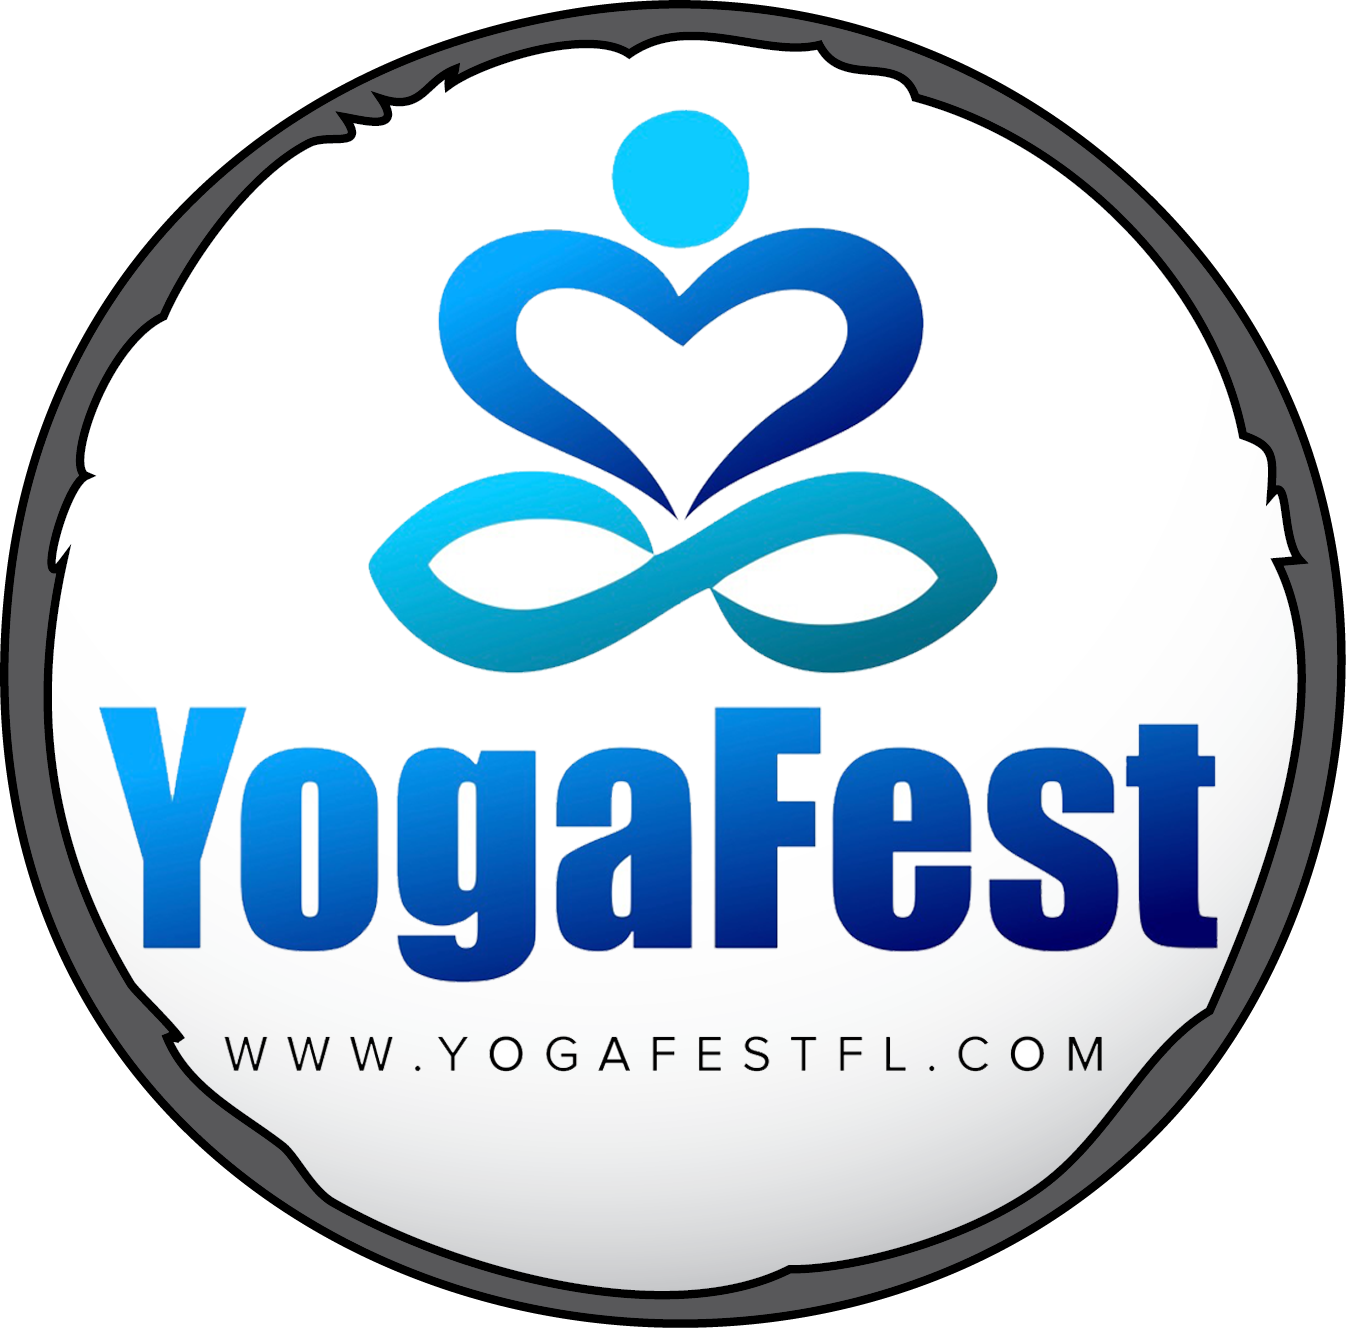 Yogafest logo